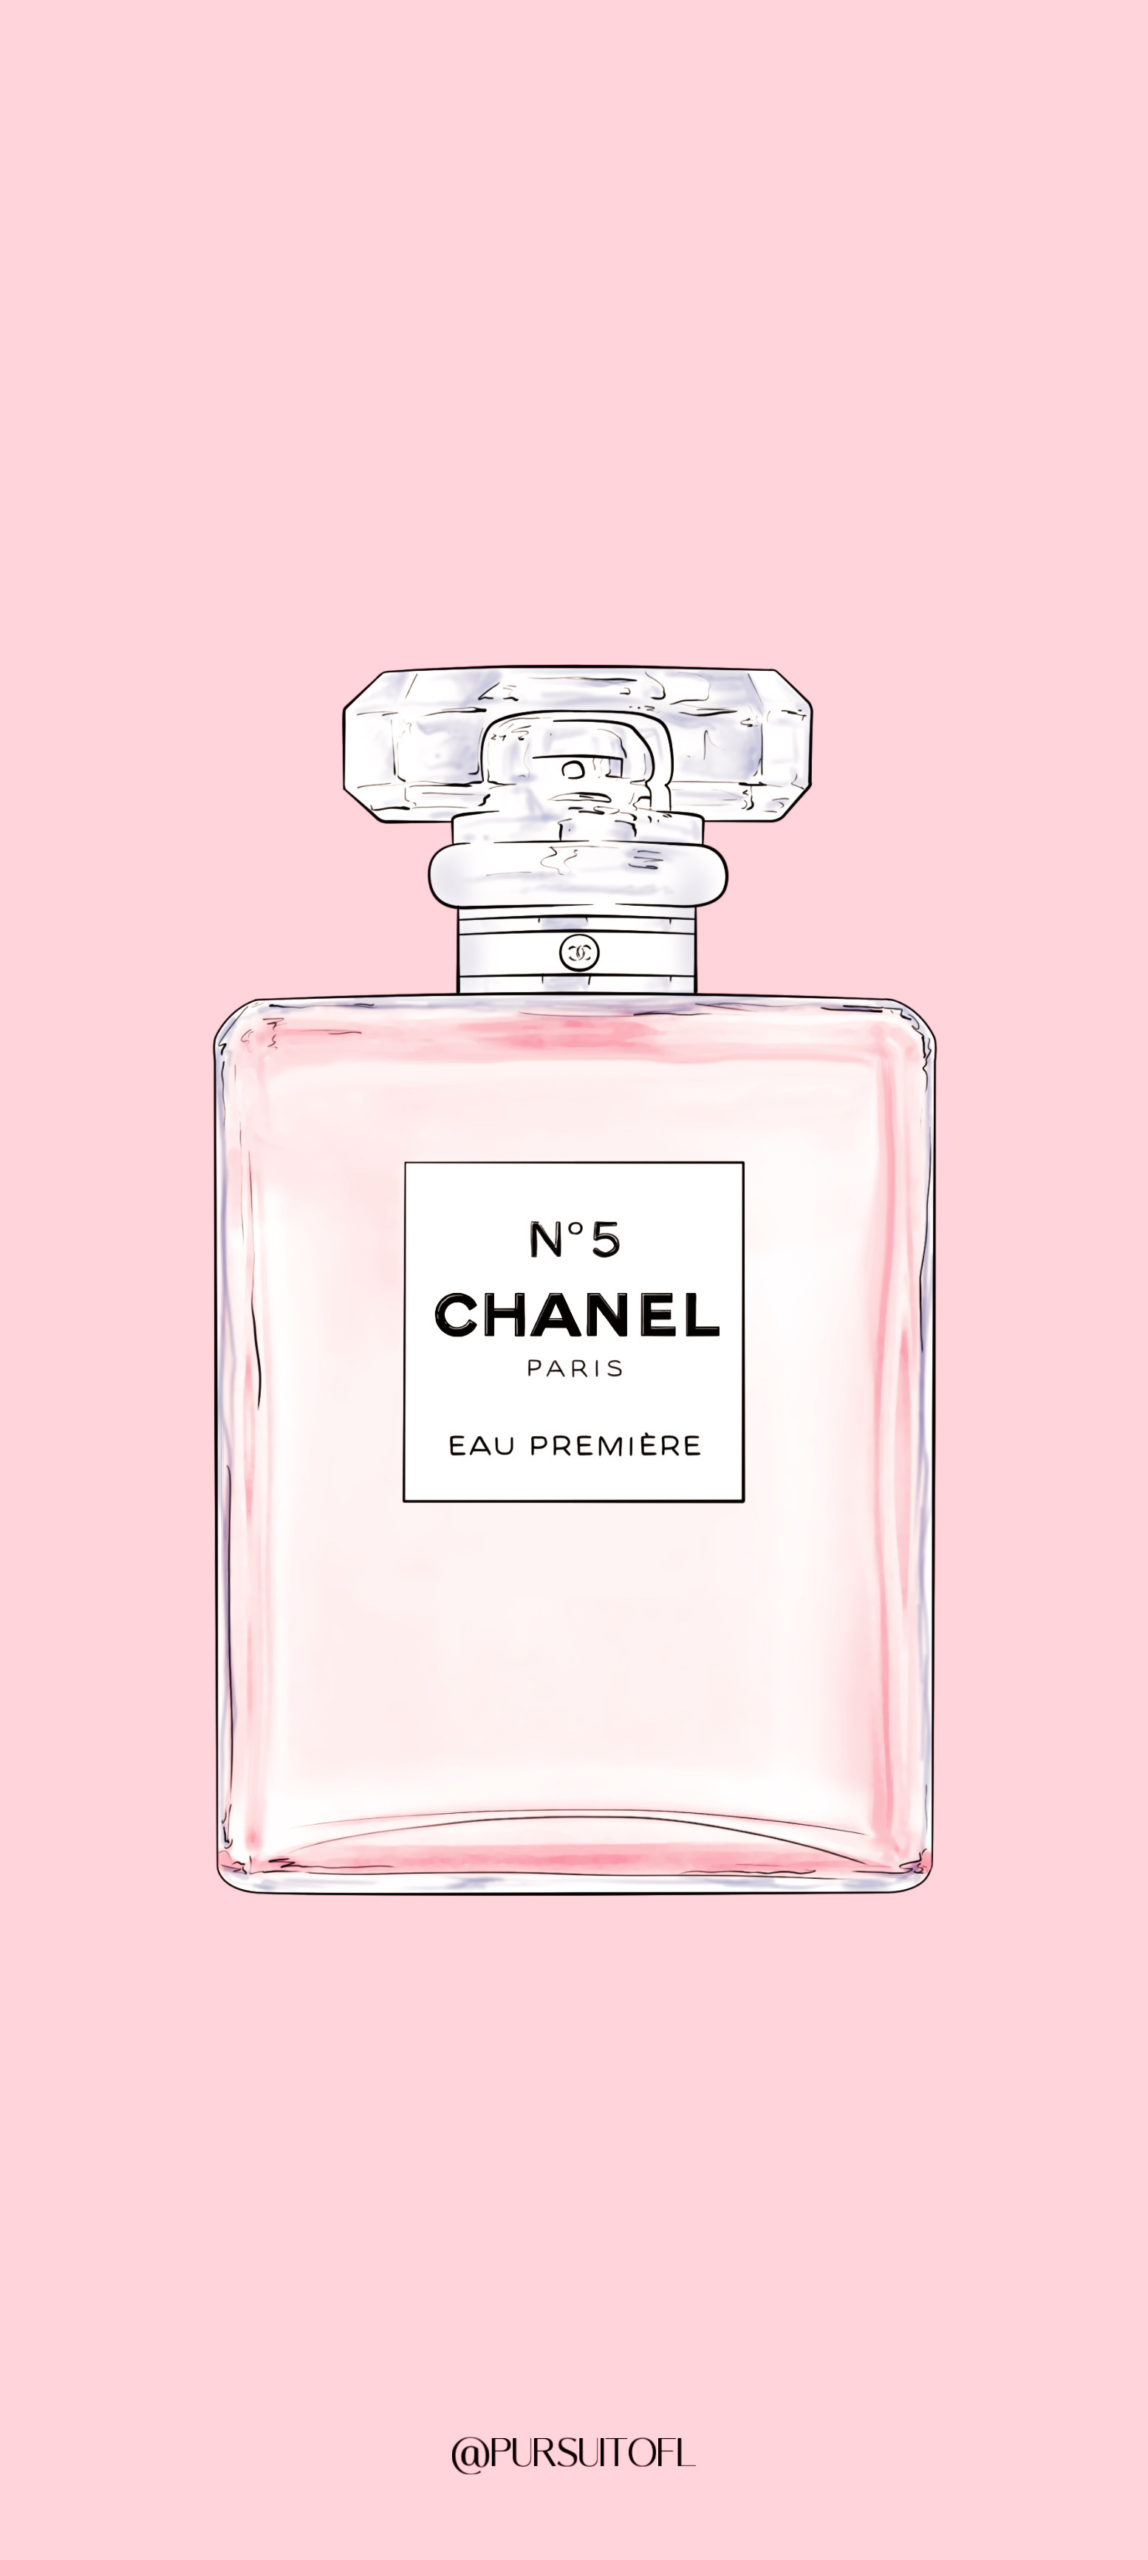 Pink phone wallpaper with No5 Chanel Paris Eau Première Perfume